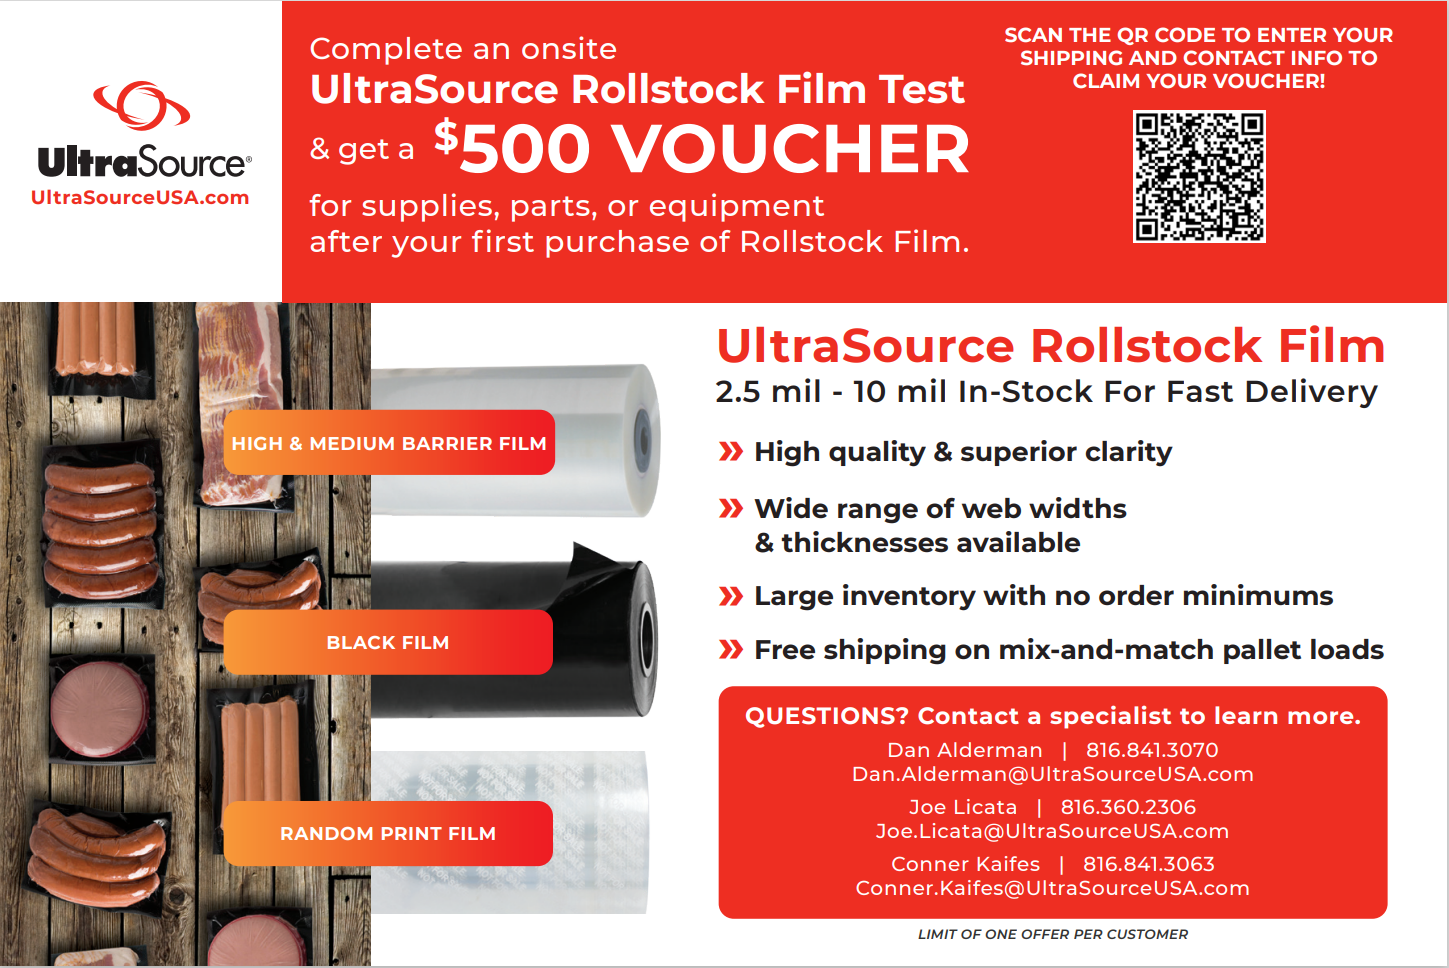 UltraSource Rollstock Film Voucher